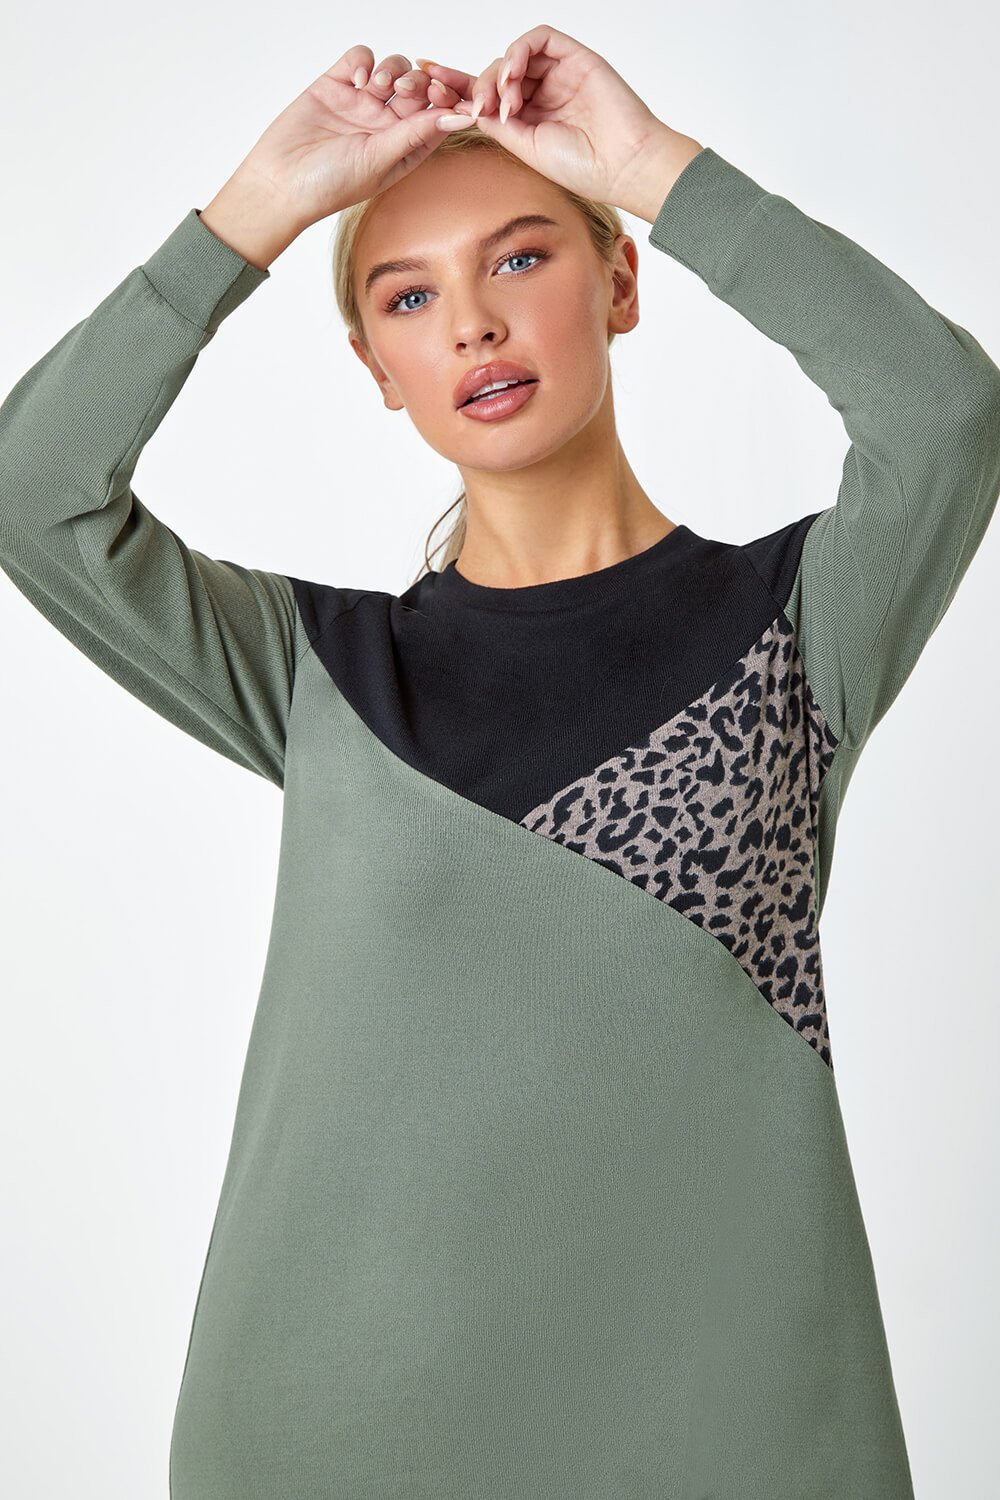 KHAKI Petite Leopard Print Colour Block Knit Dress, Image 4 of 5